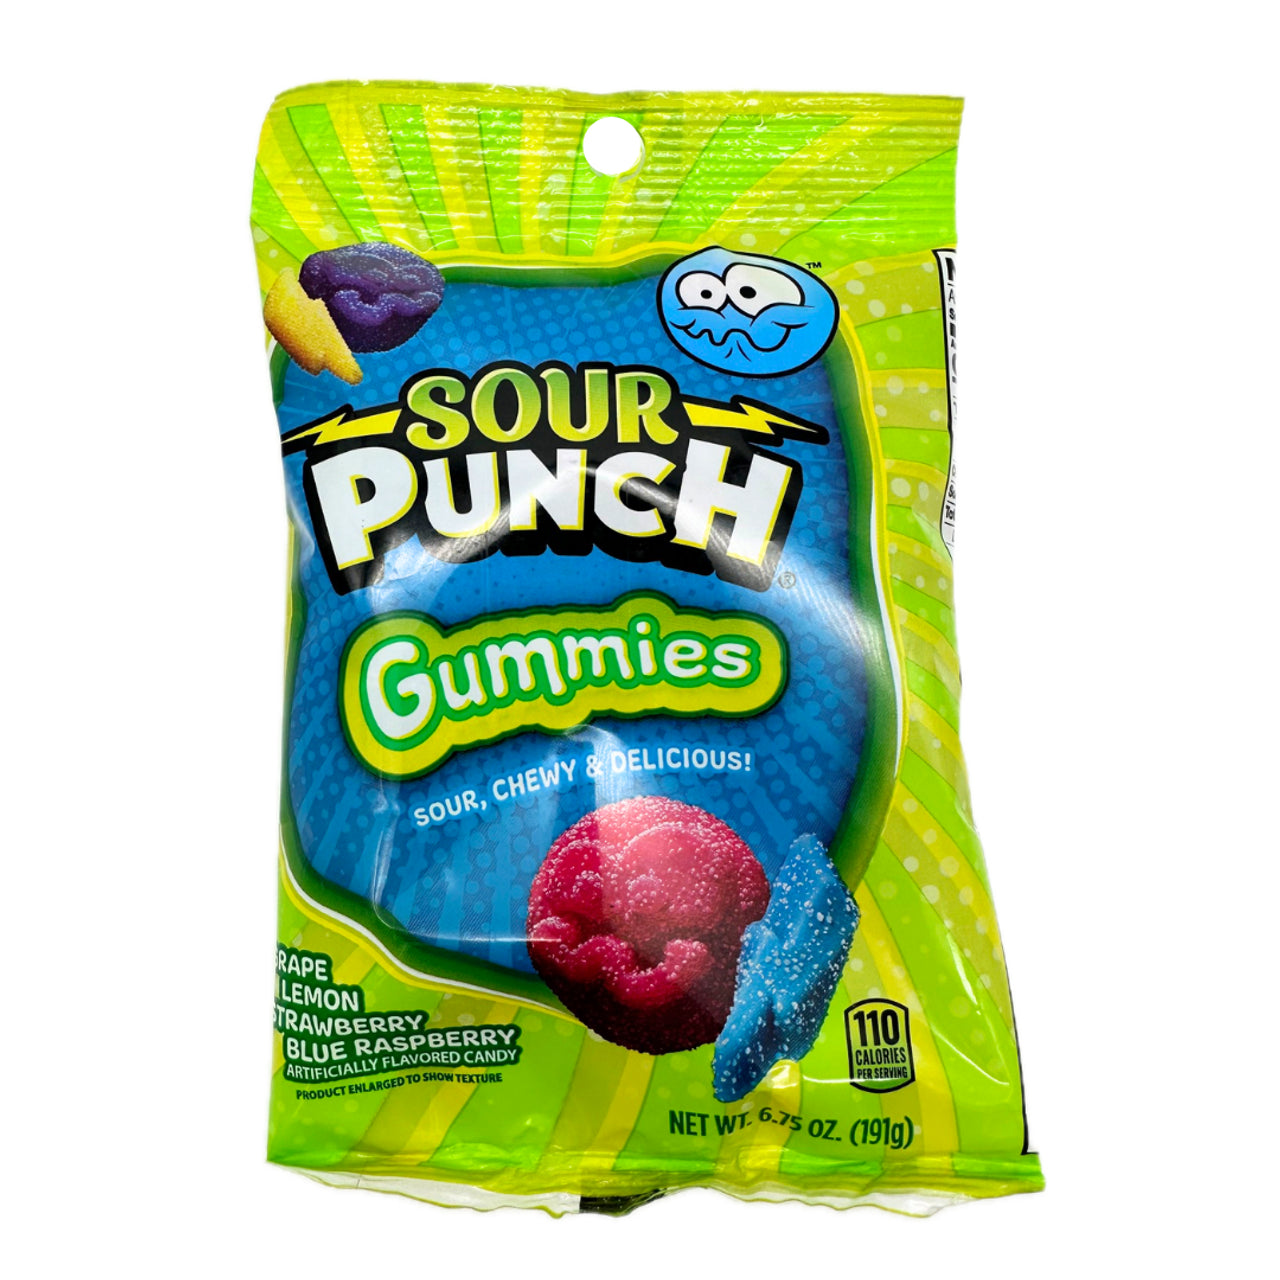 Sour Punch Gummies